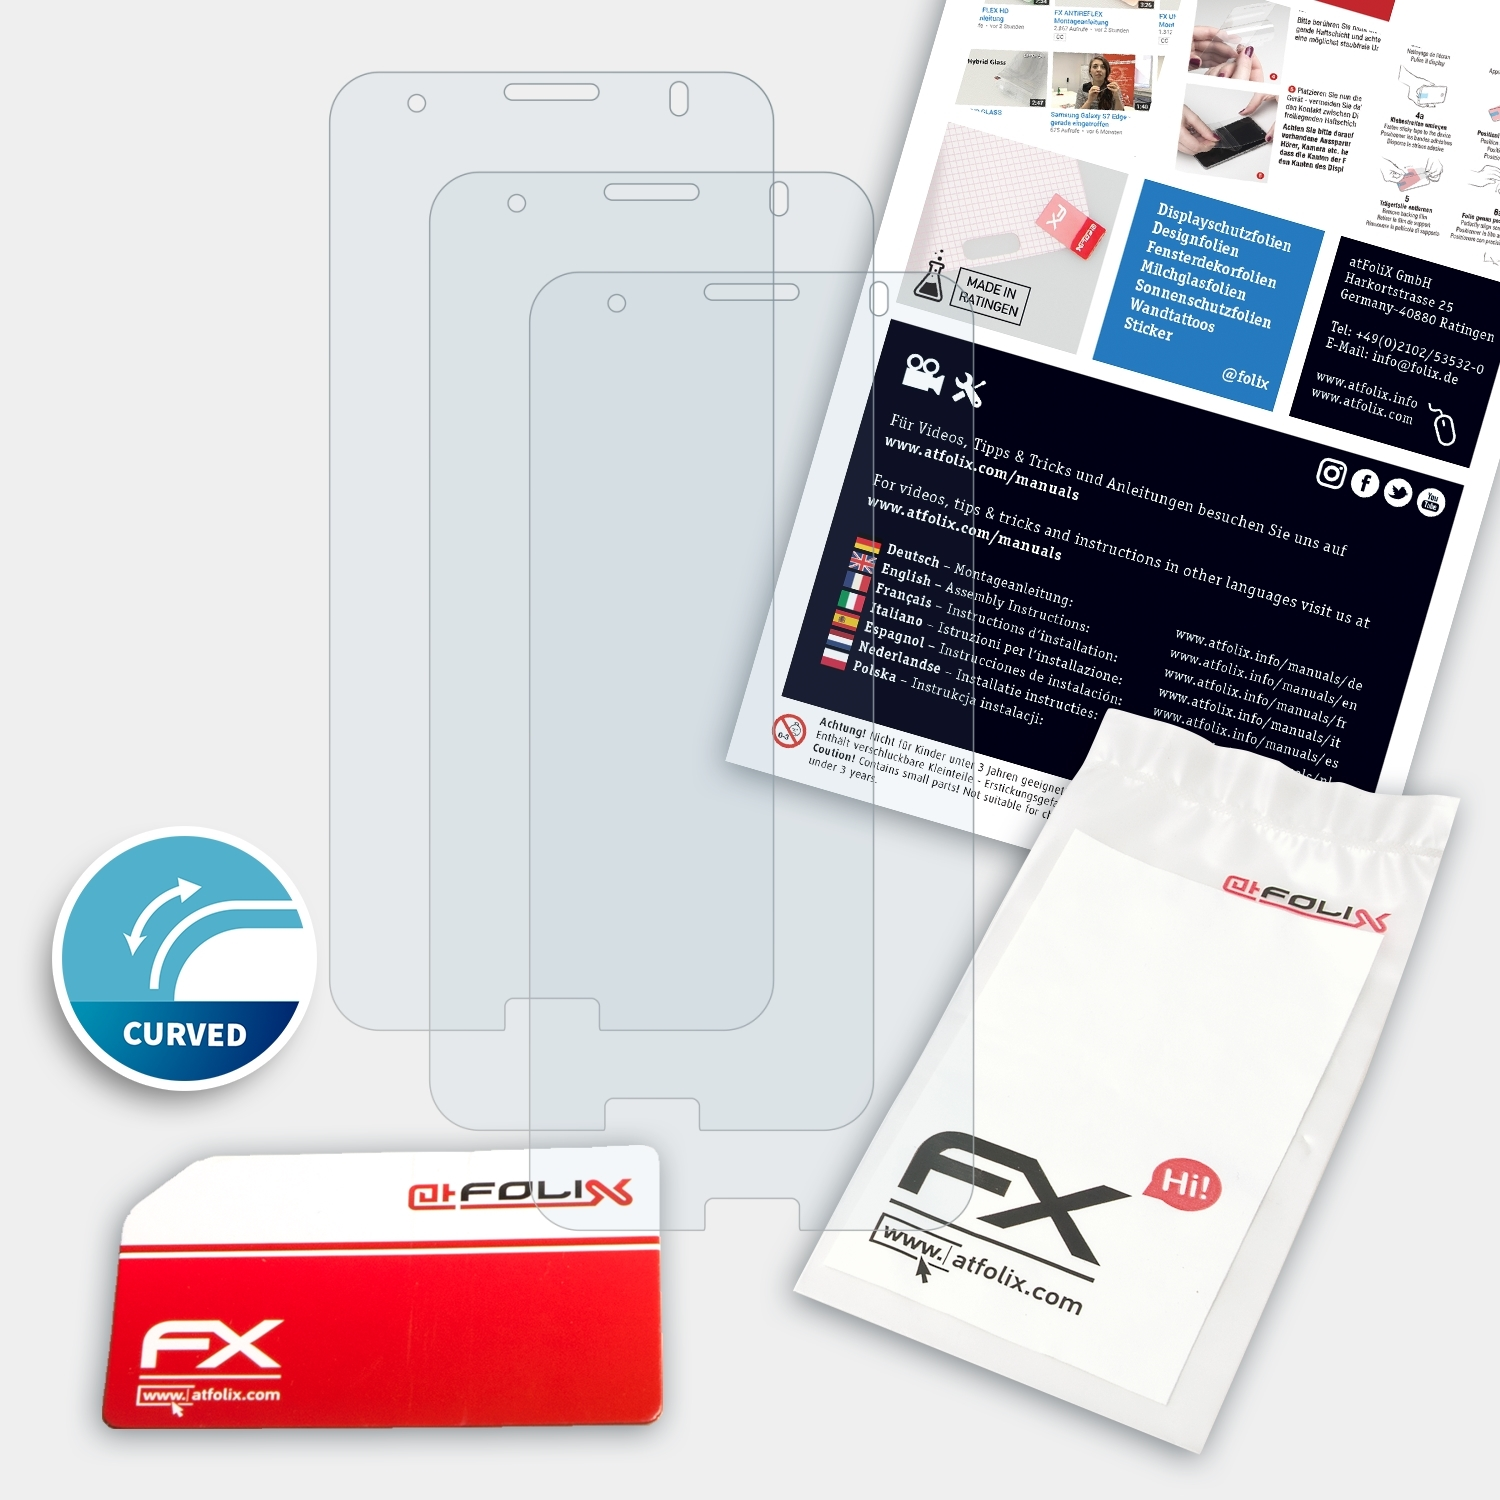 Displayschutz(für 3x ATFOLIX Emporia Smart.3) FX-ActiFleX